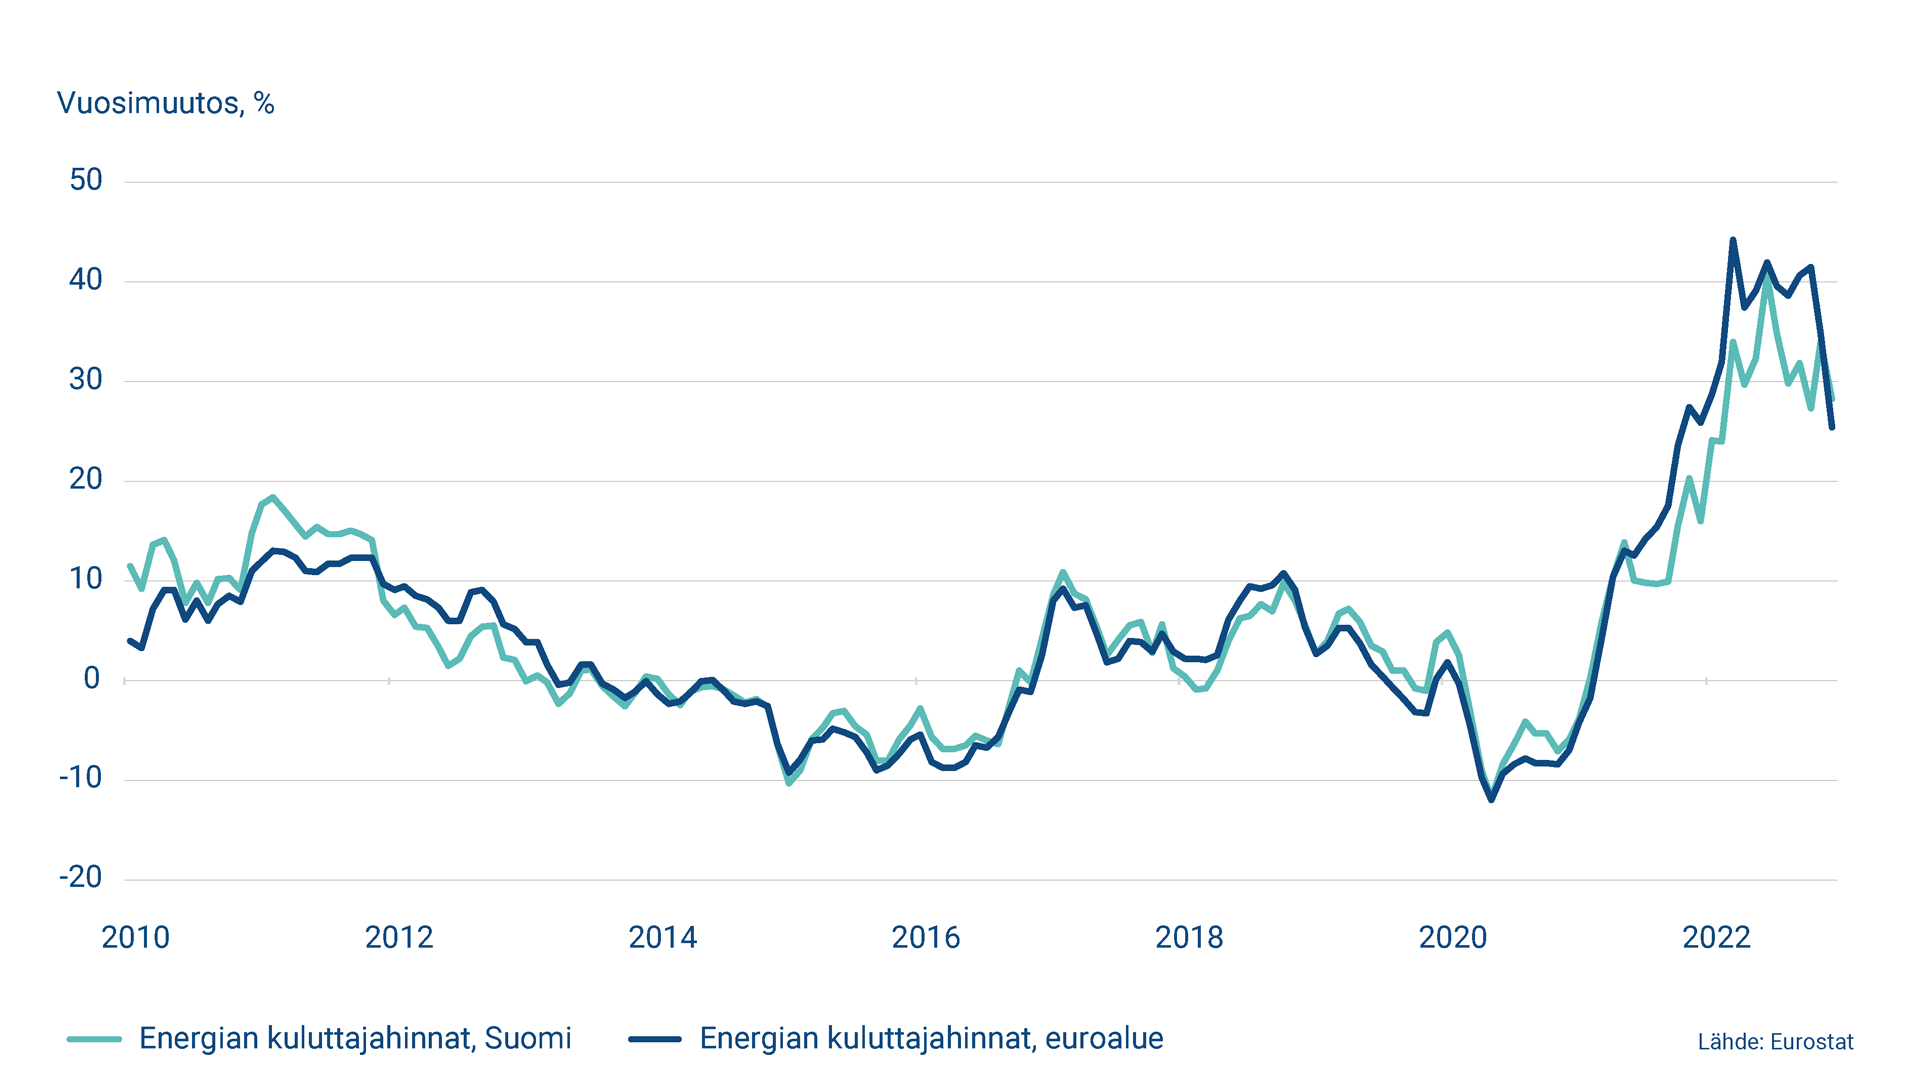 Kuvio näyttää energian kuluttajahintojen vuosimuutoksen Suomessa ja euroalueella 2010-2022.